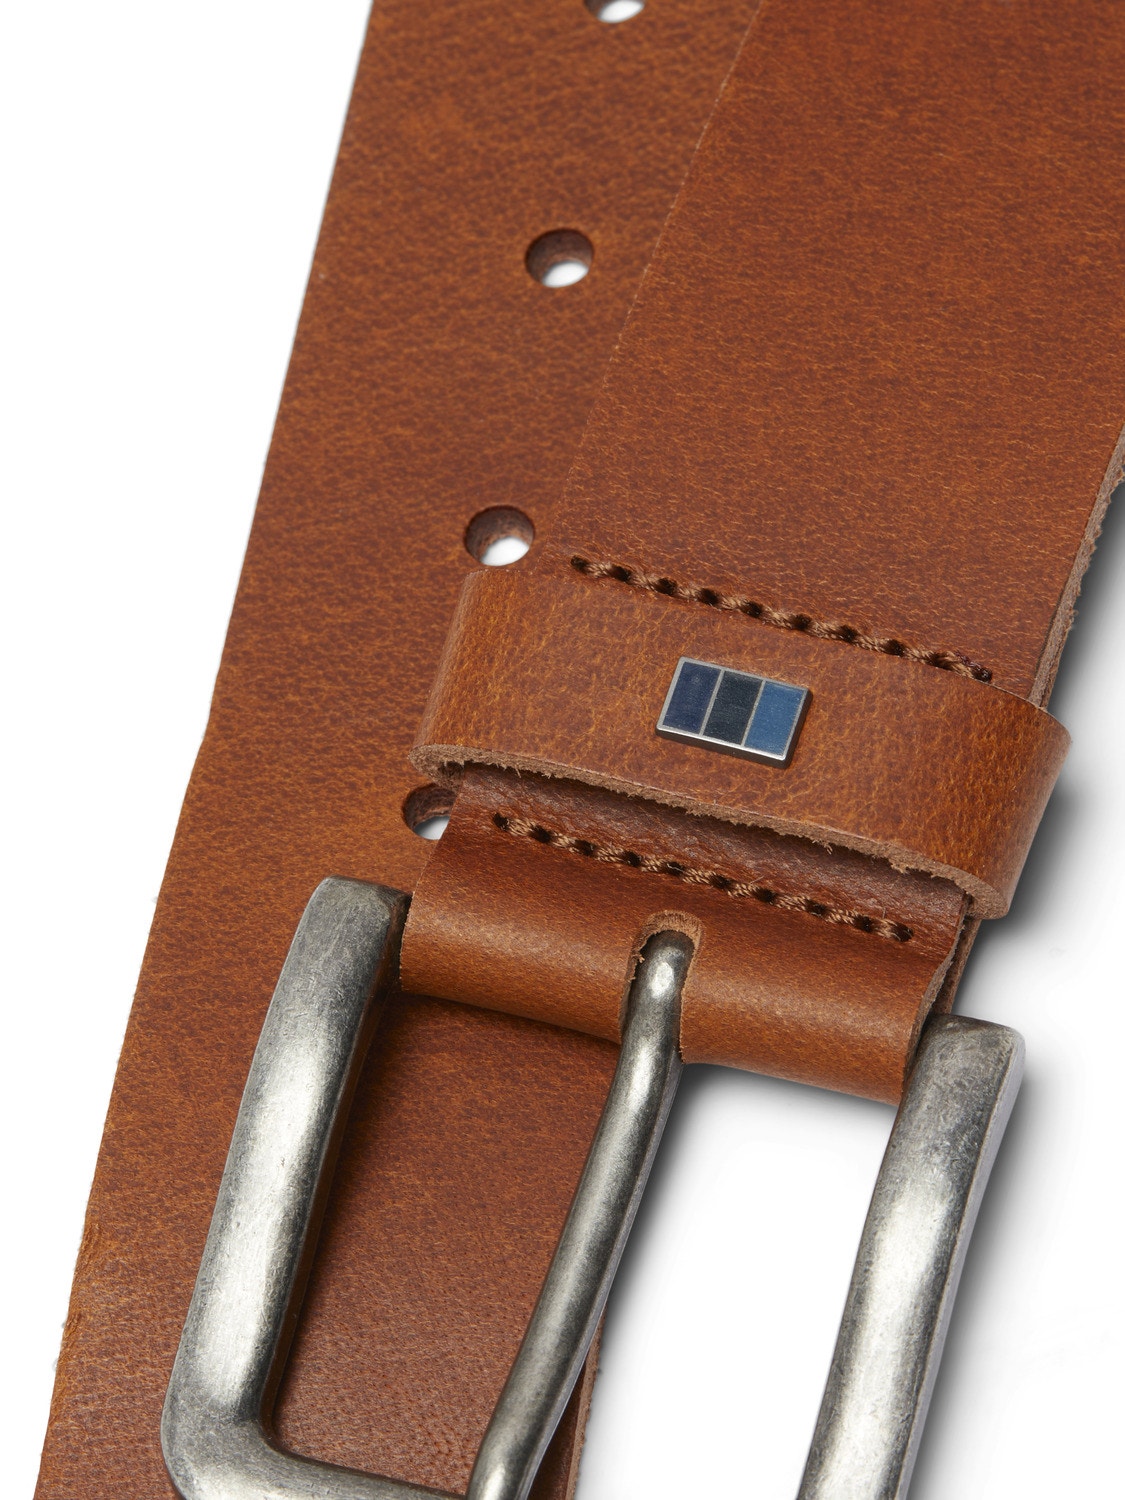 Jack & Jones Leather Belt -Cognac - 12242684